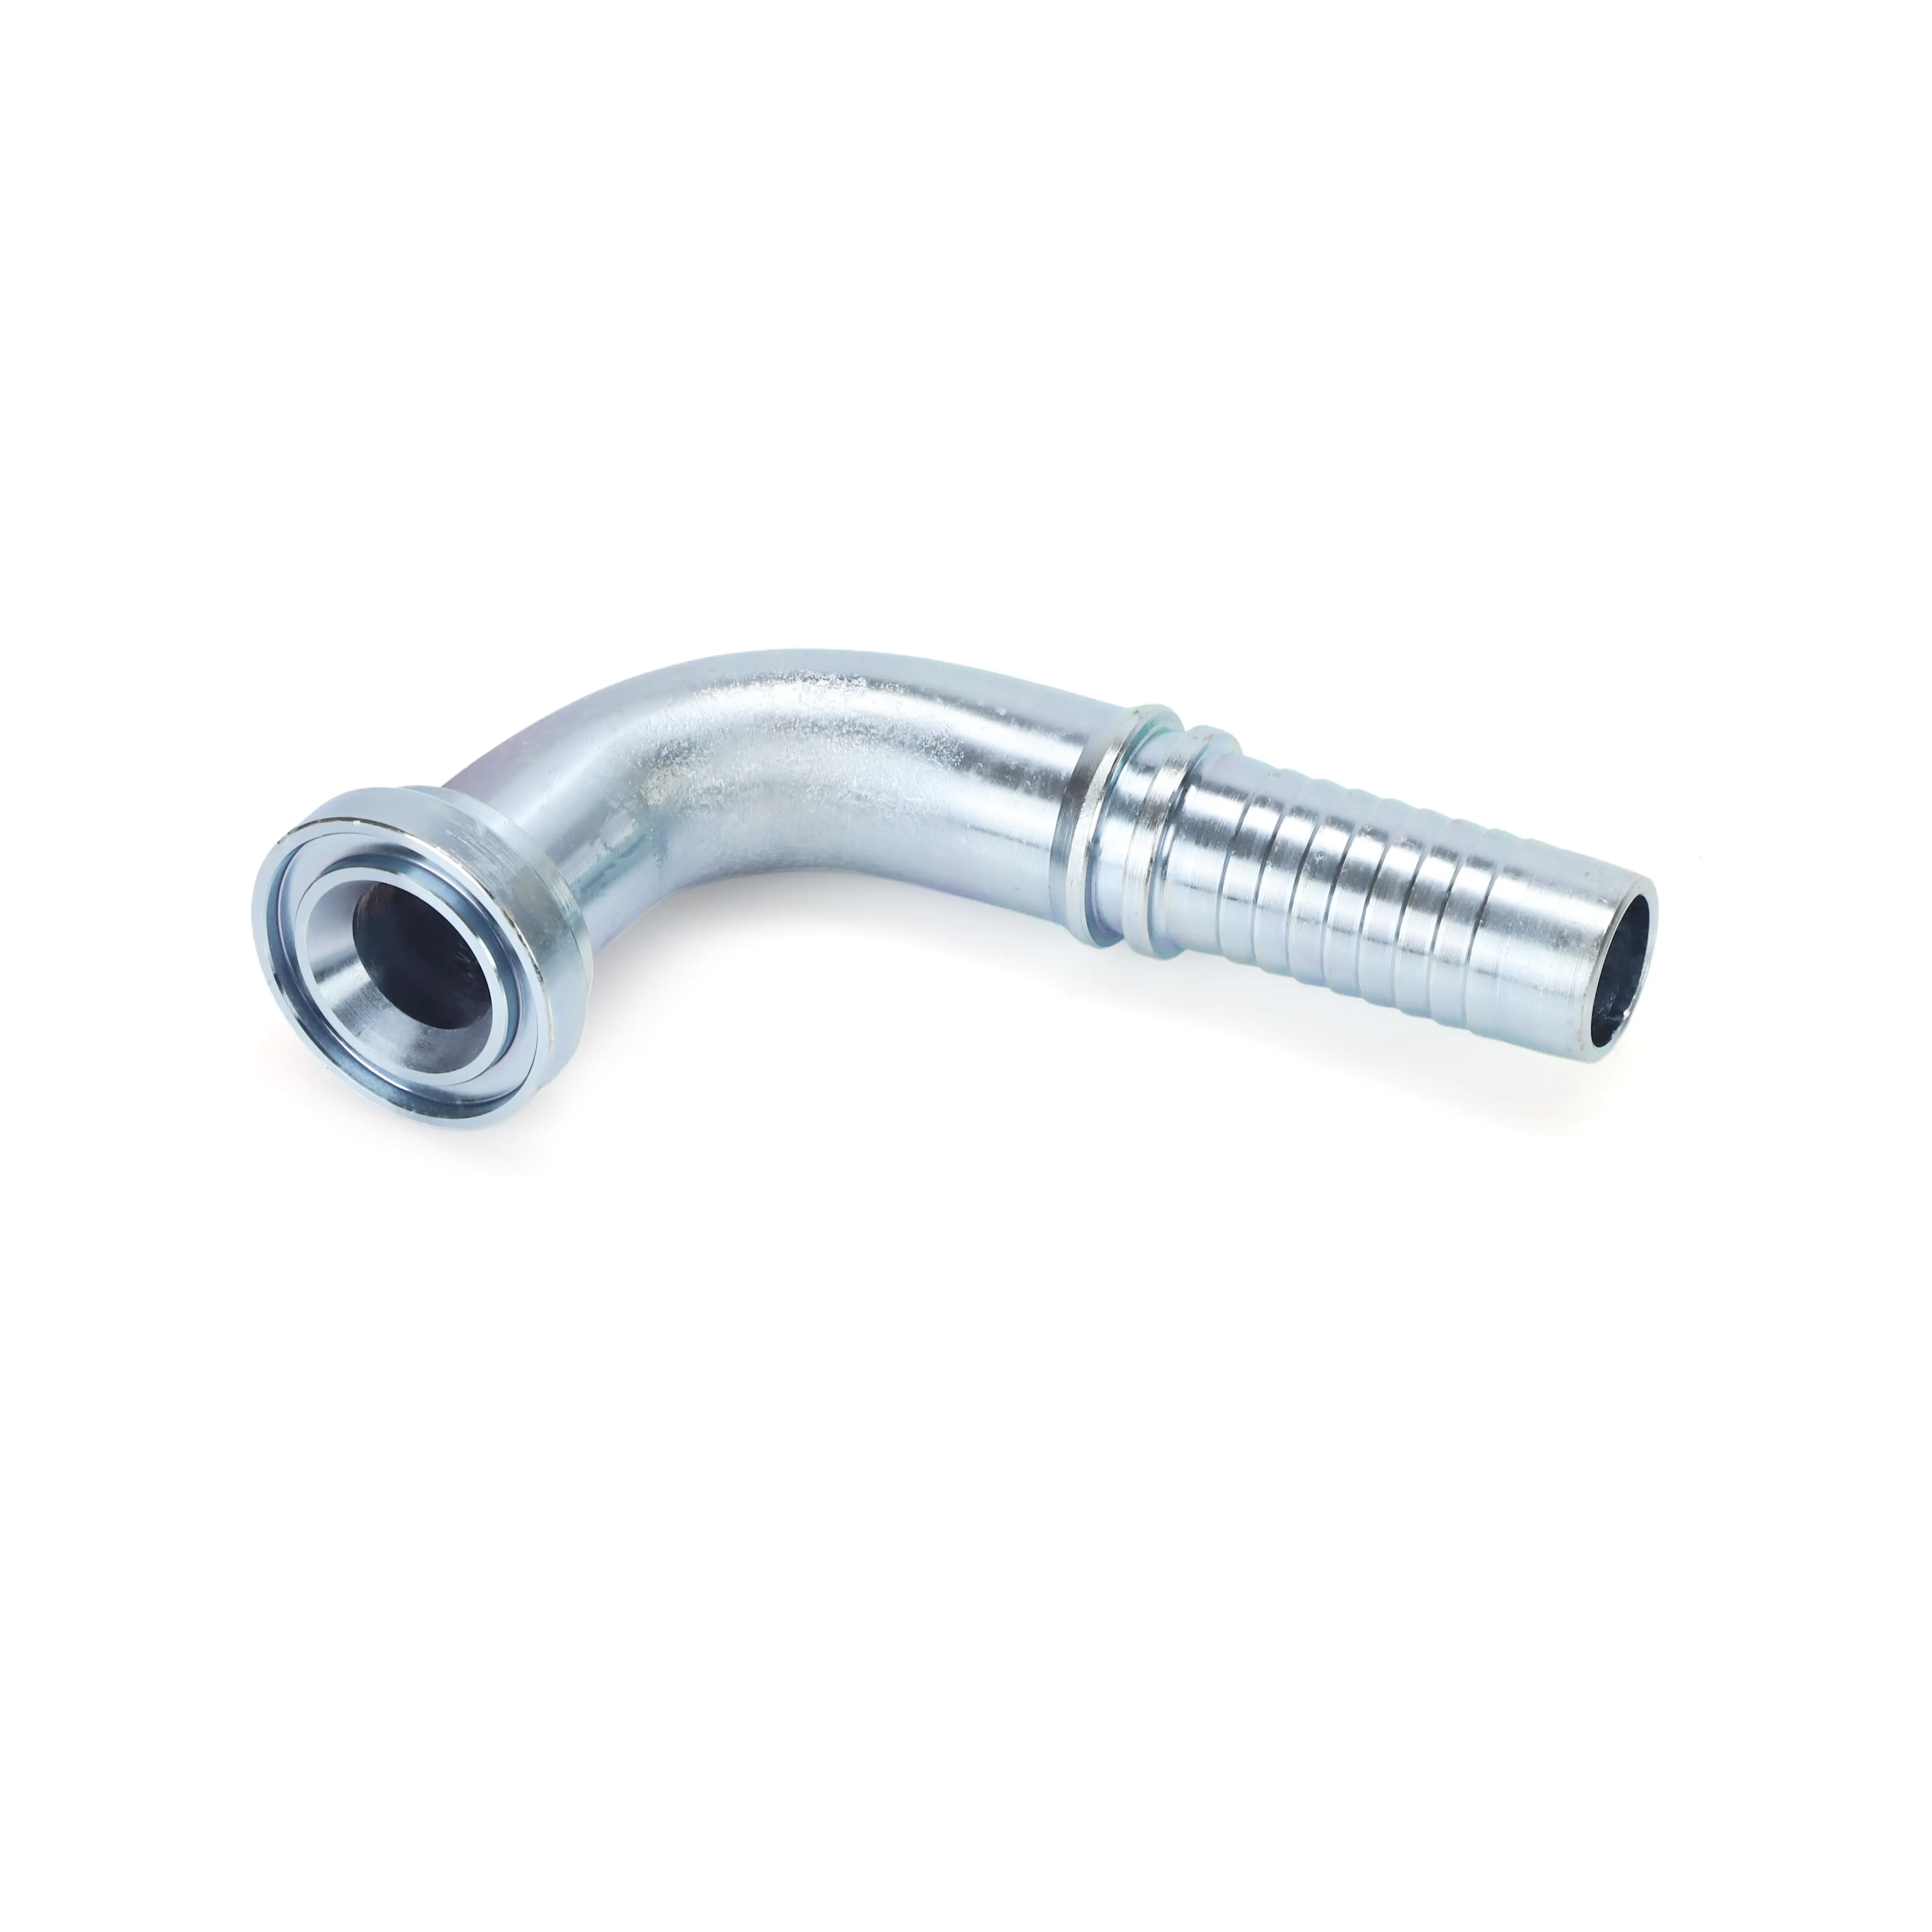 Raccordi per tubi flessibili a gomito rettilineo adattatore per raccordo idraulico del tubo flessibile